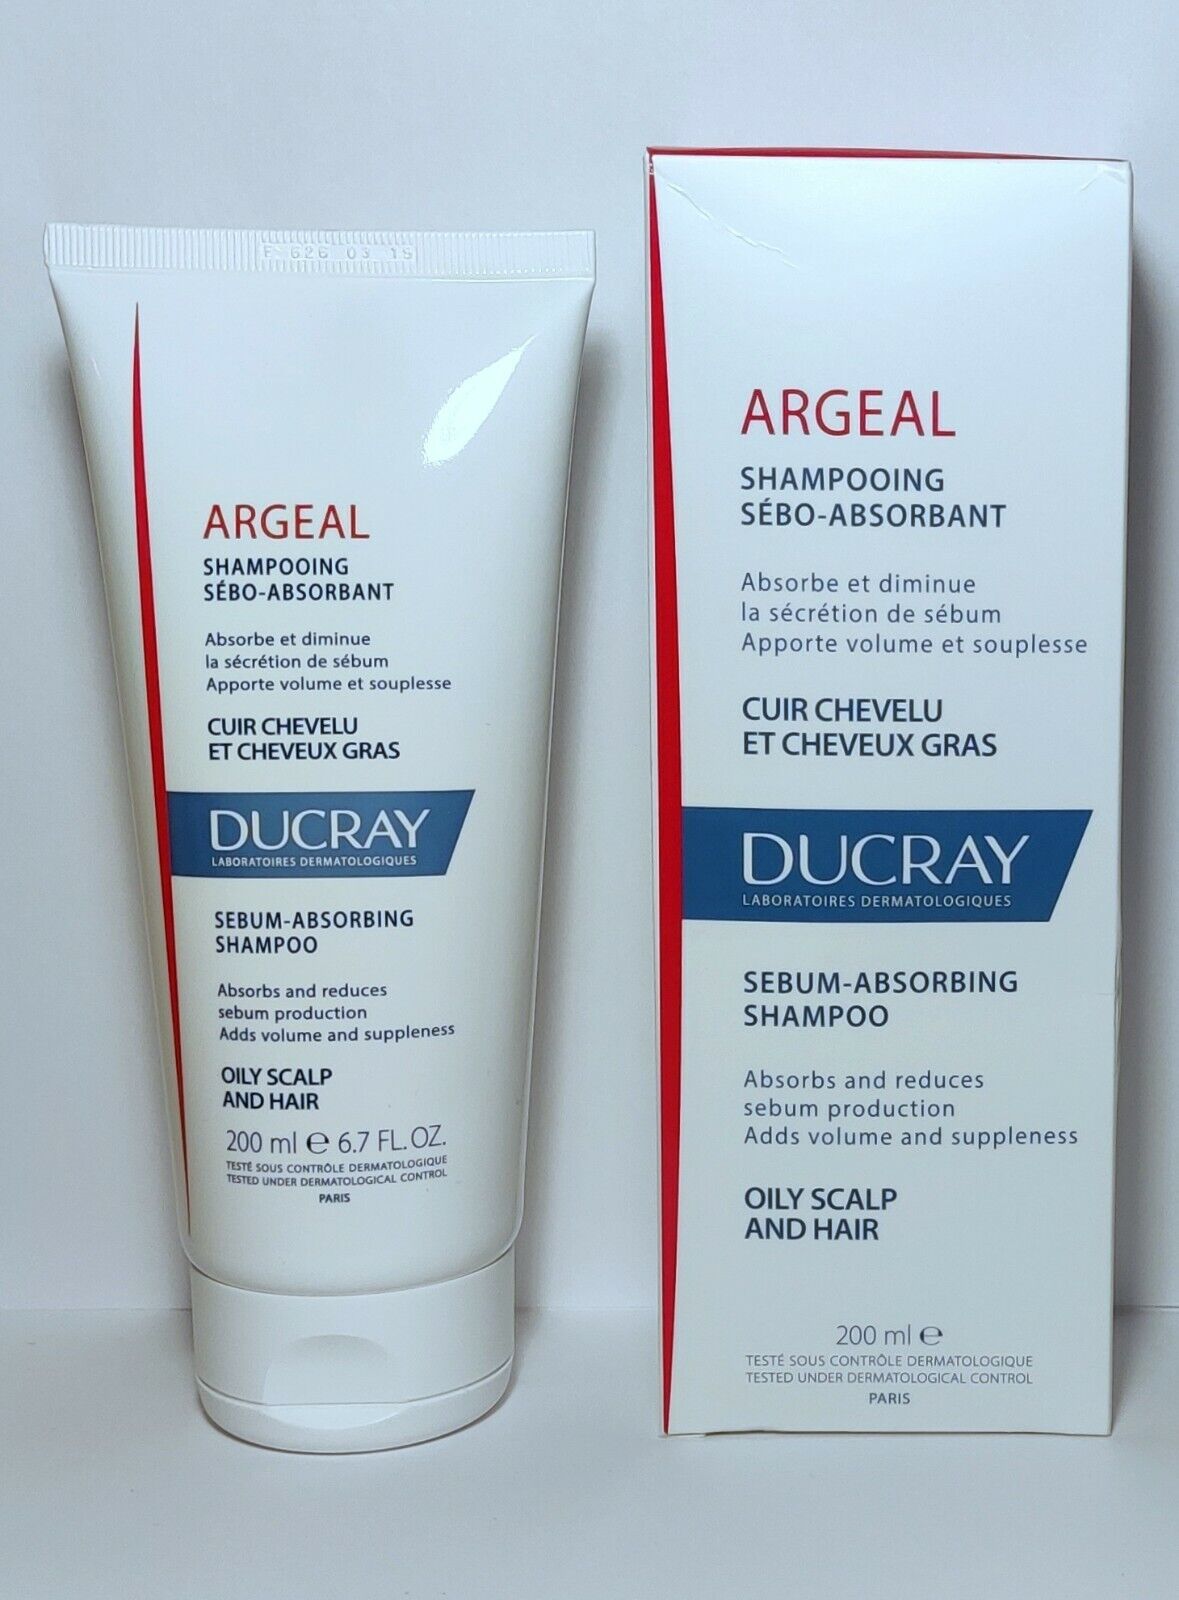 Ducray Argeal Sebum Absorbing Shampoo 200 ml - Oily Hair & Scalp - Reduces  Sebum 3282770110111 | eBay